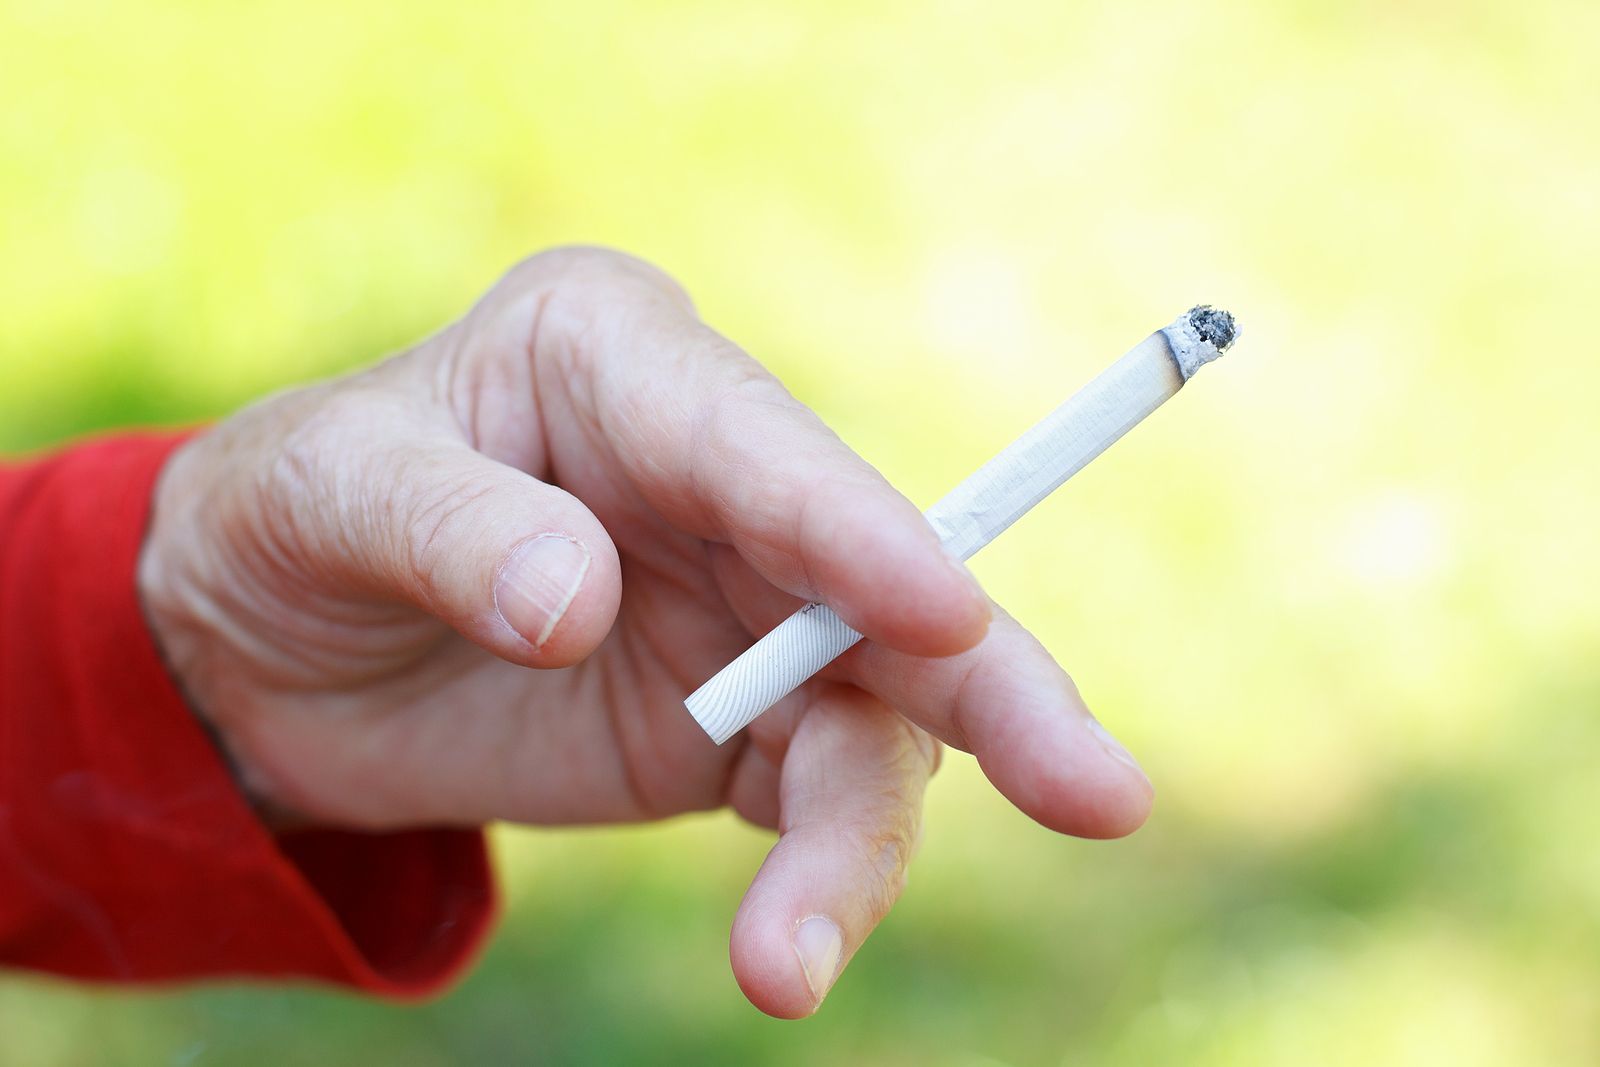 Fumar altera el sistema inmune incluso años después de dejarlo